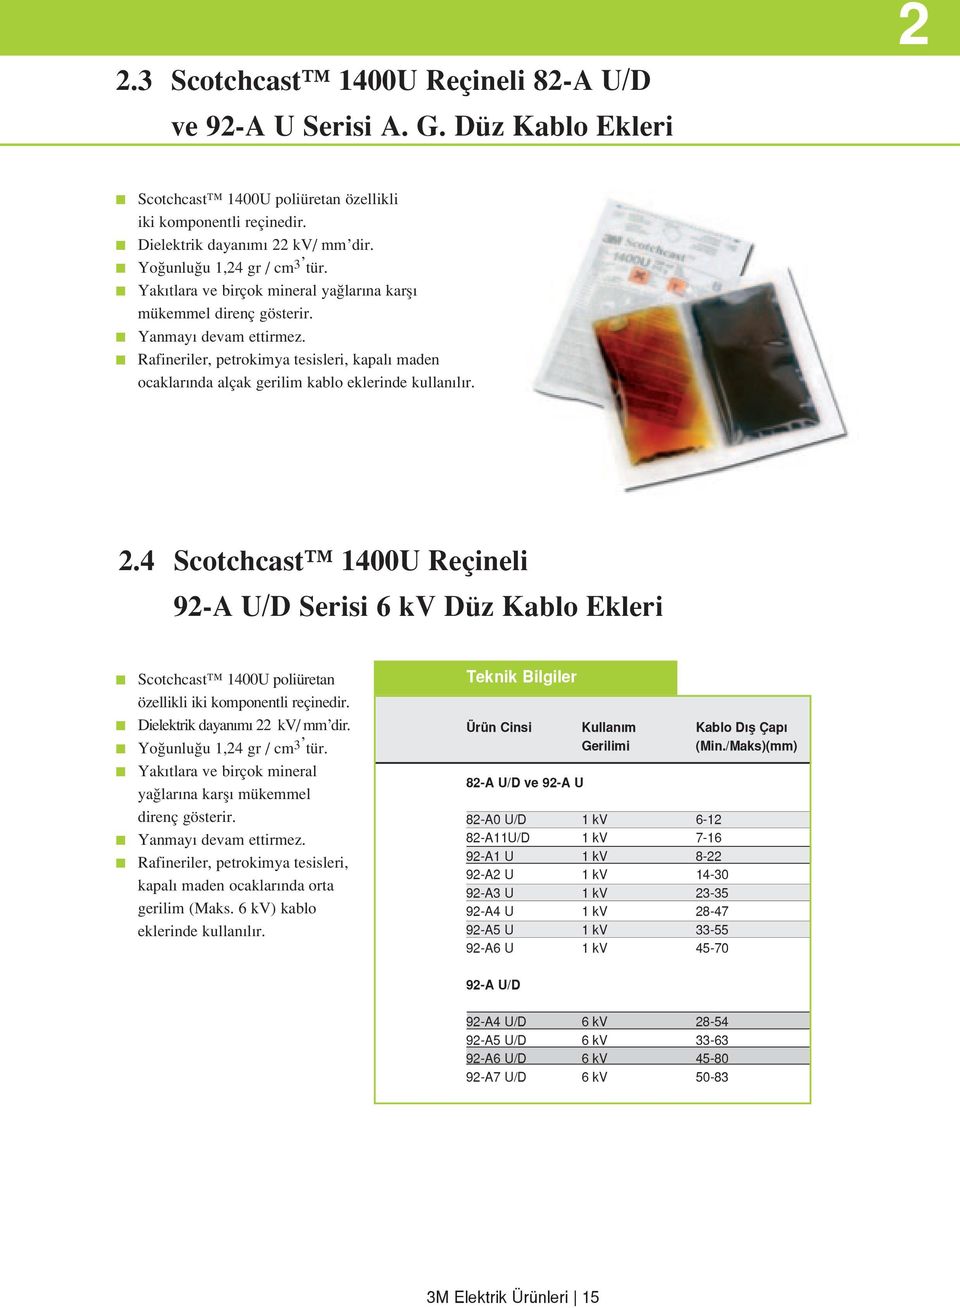 2.4 Scotchcast 1400U Reçineli 92-A U/D Serisi 6 kv Düz Kablo Ekleri Scotchcast 1400U poliüretan özellikli iki komponentli reçinedir. Dielektrik dayan m 22 kv/ mm dir. Yo unlu u 1,24 gr / cm 3 tür.